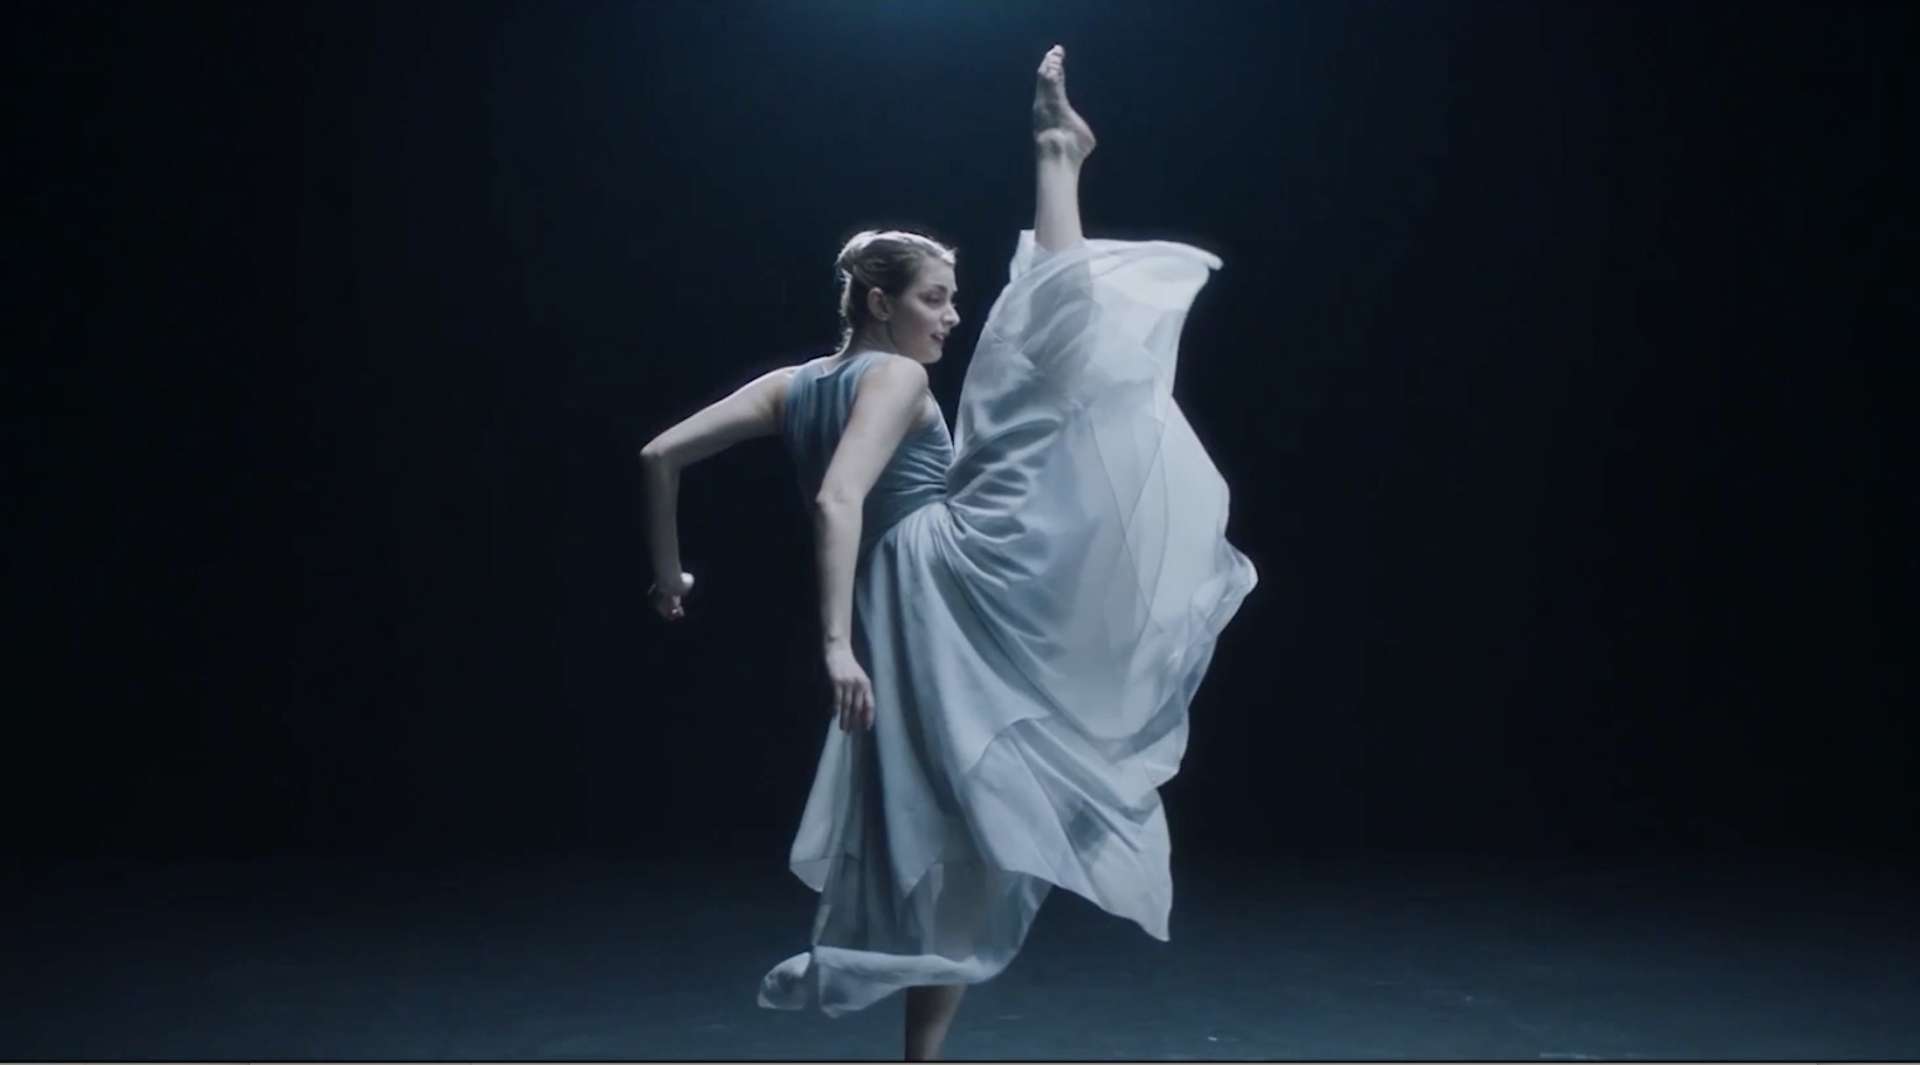 芭蕾舞&MacBook Air融合创意视频